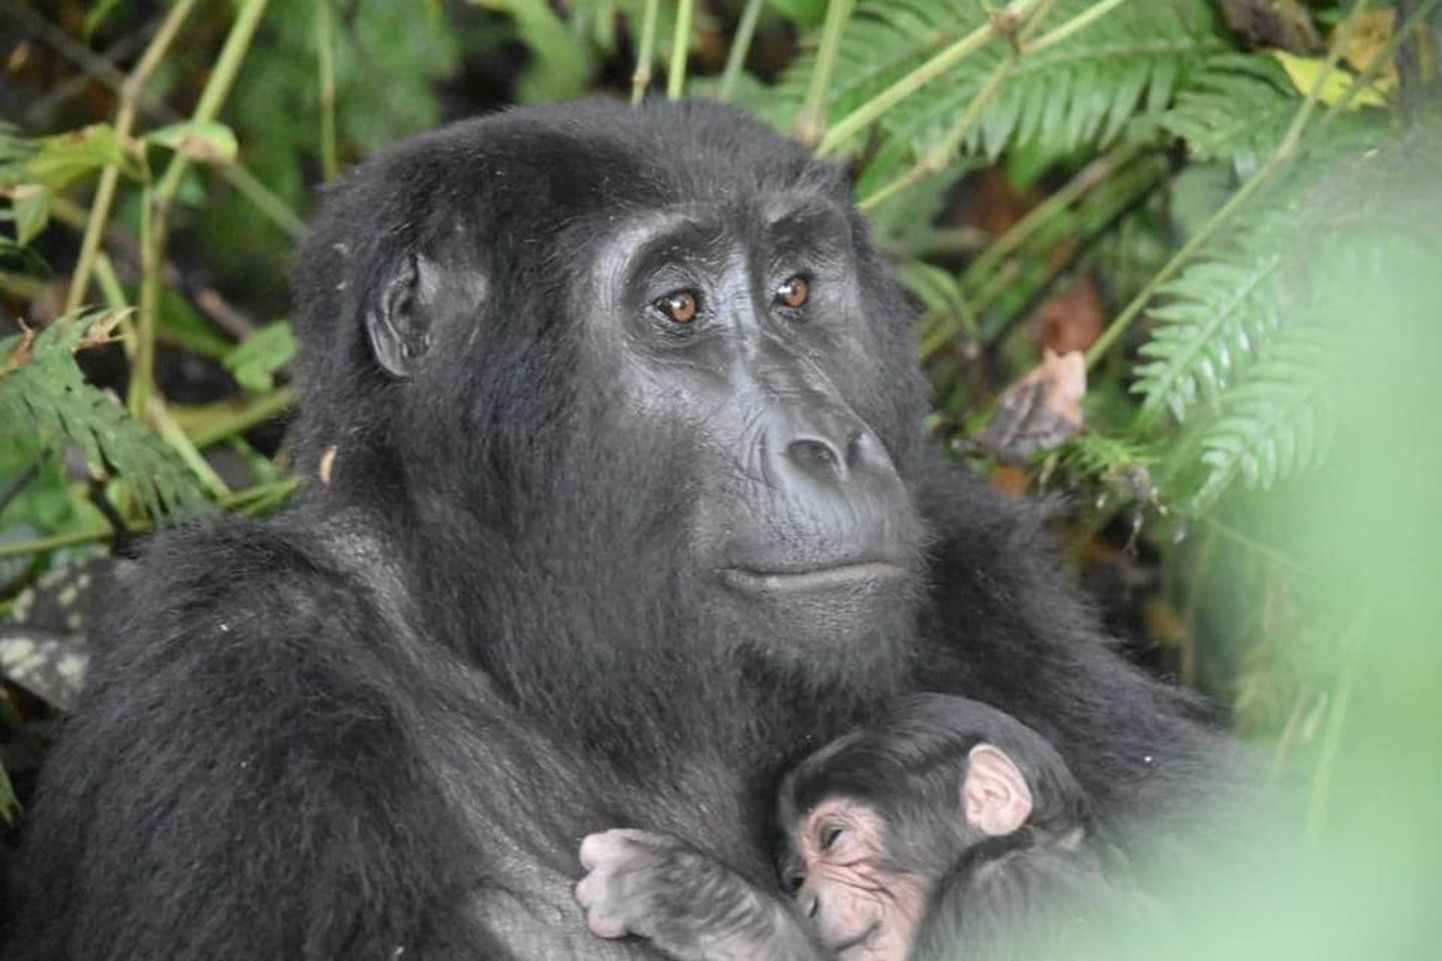 Rushegura gorillade perekonda kuuluv gorilla nimega Ruterana jäi koos oma vastsündinud järeltulijaga Uganda edelaosas asuva Bwindi rahvuspargi töötajatele silma septembri alguses.